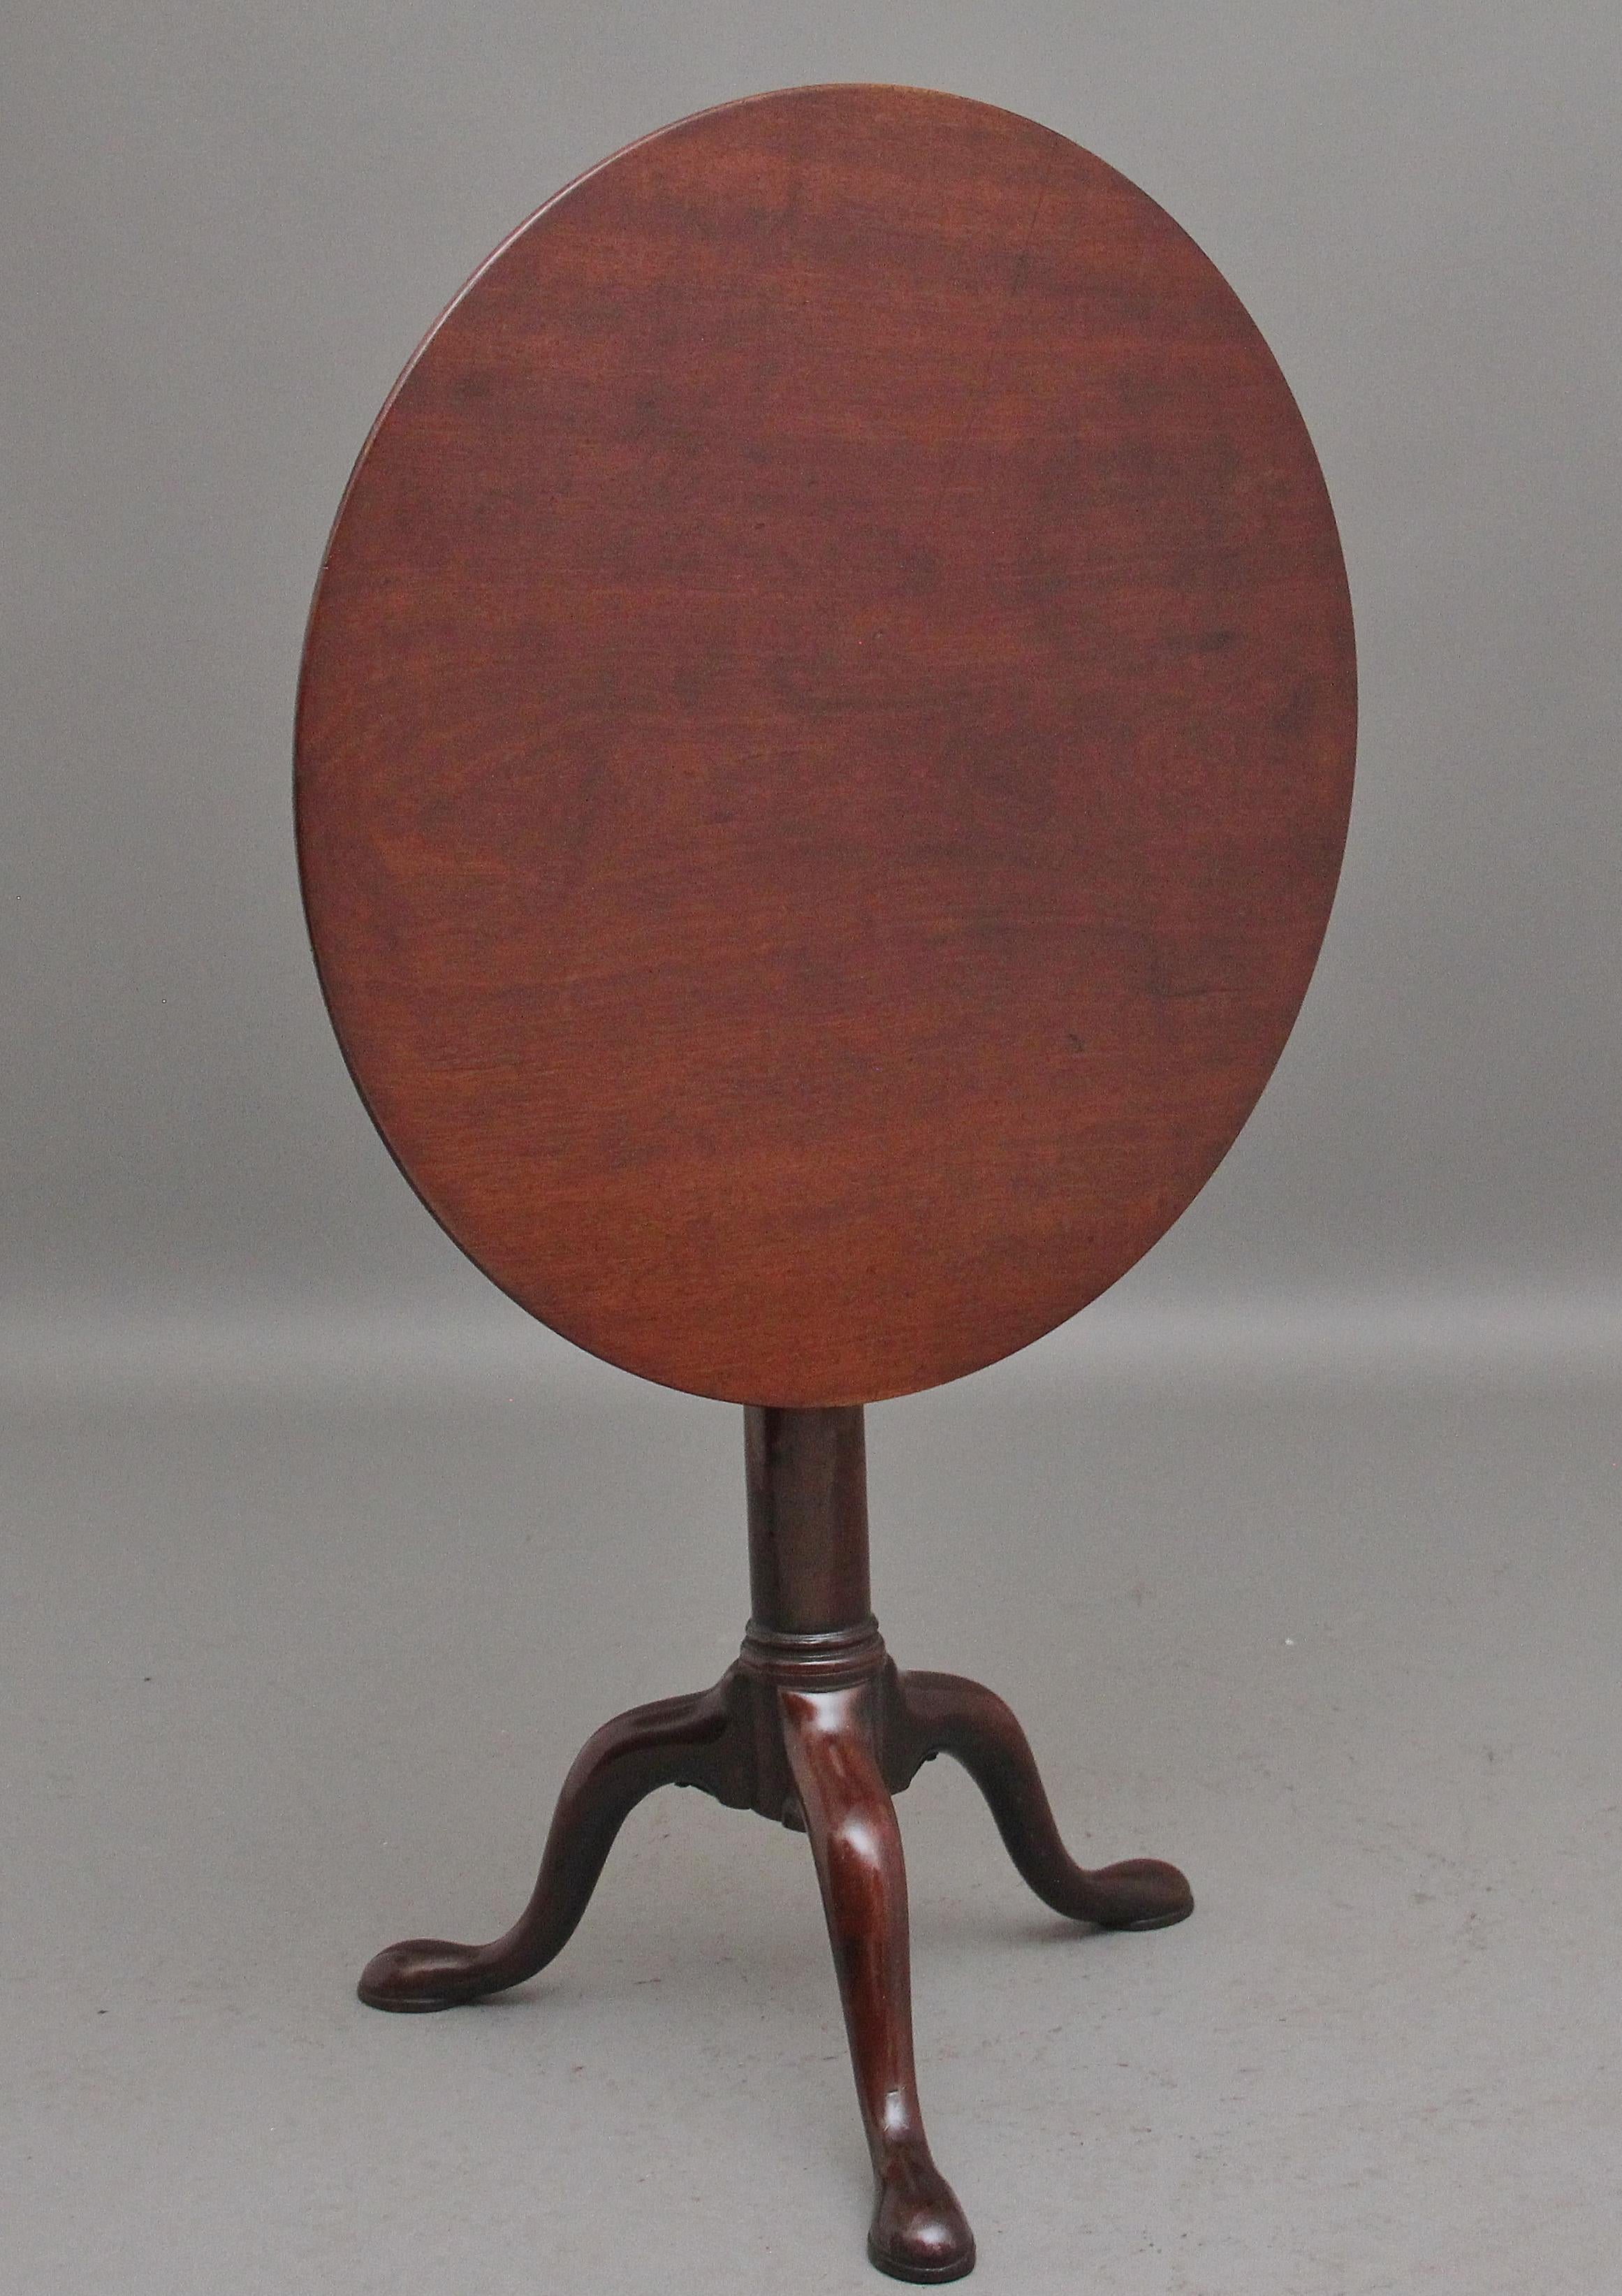 Mahagoni-Dreibein-/Weintisch des 18. Jahrhunderts, die runde Mahagoni-Platte sitzt auf einer Vogelkäfighalterung, so dass man die Platte drehen kann, ohne die Basis zu drehen, gestützt auf eine gedrehte Säule, die mit drei schlanken, geformten